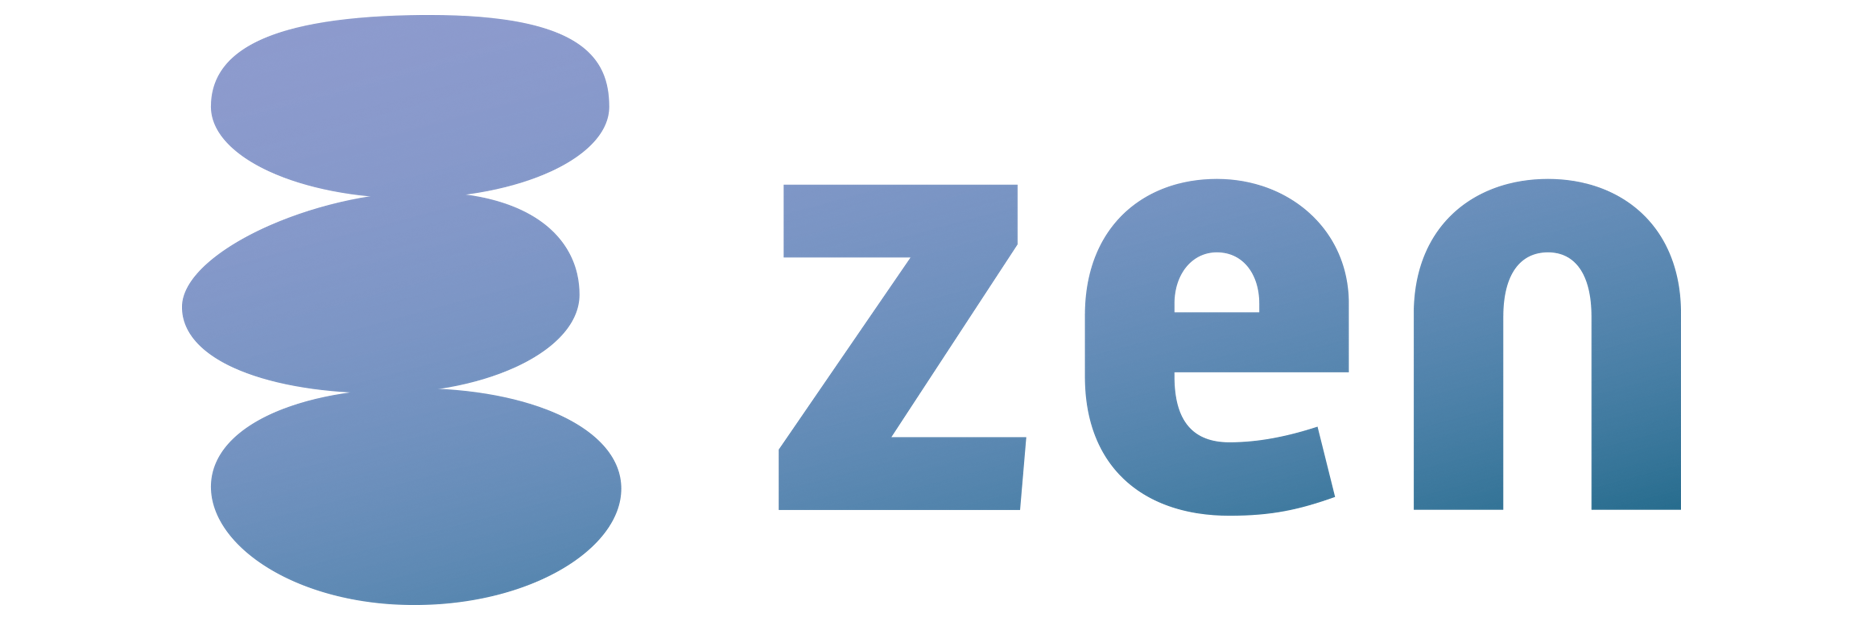 CyberZ、広告クリエイティブの要素分析を実現するパフォーマンスタグアナリティクス「zen」を開発